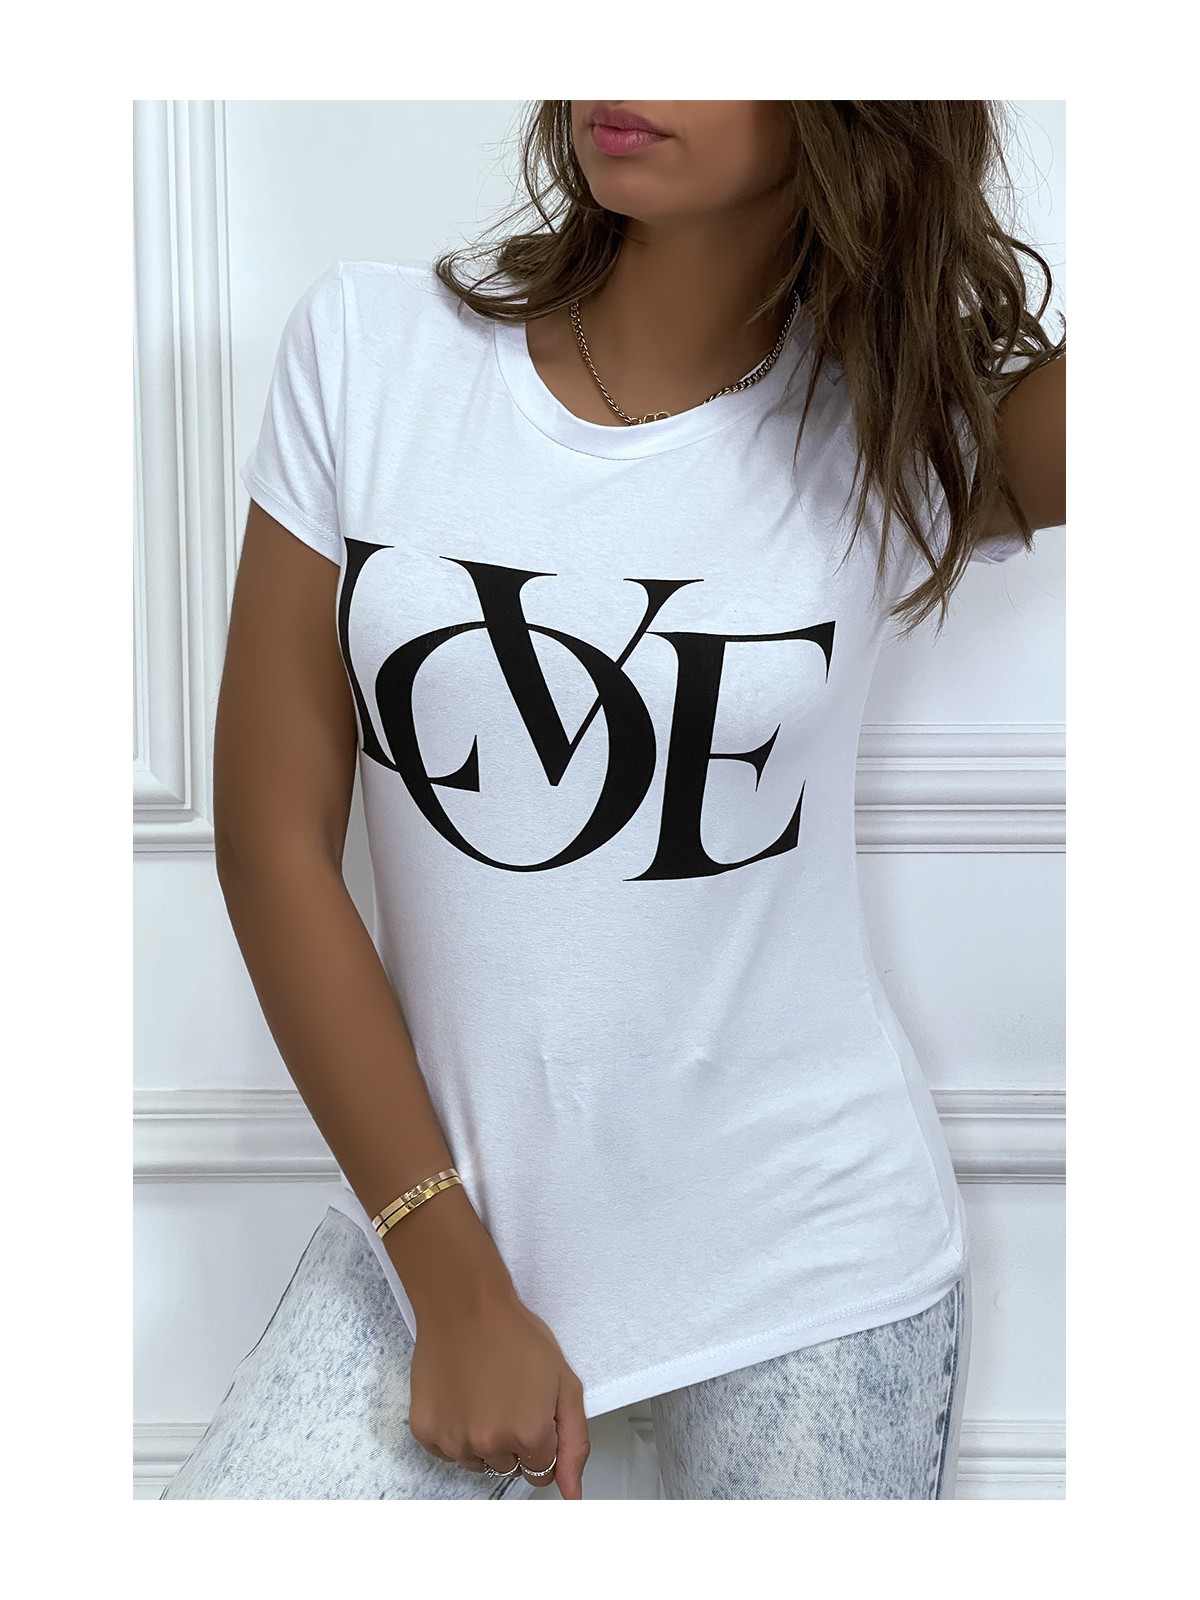 T-shirt basique blanc près du corps inscription "Love" - 4